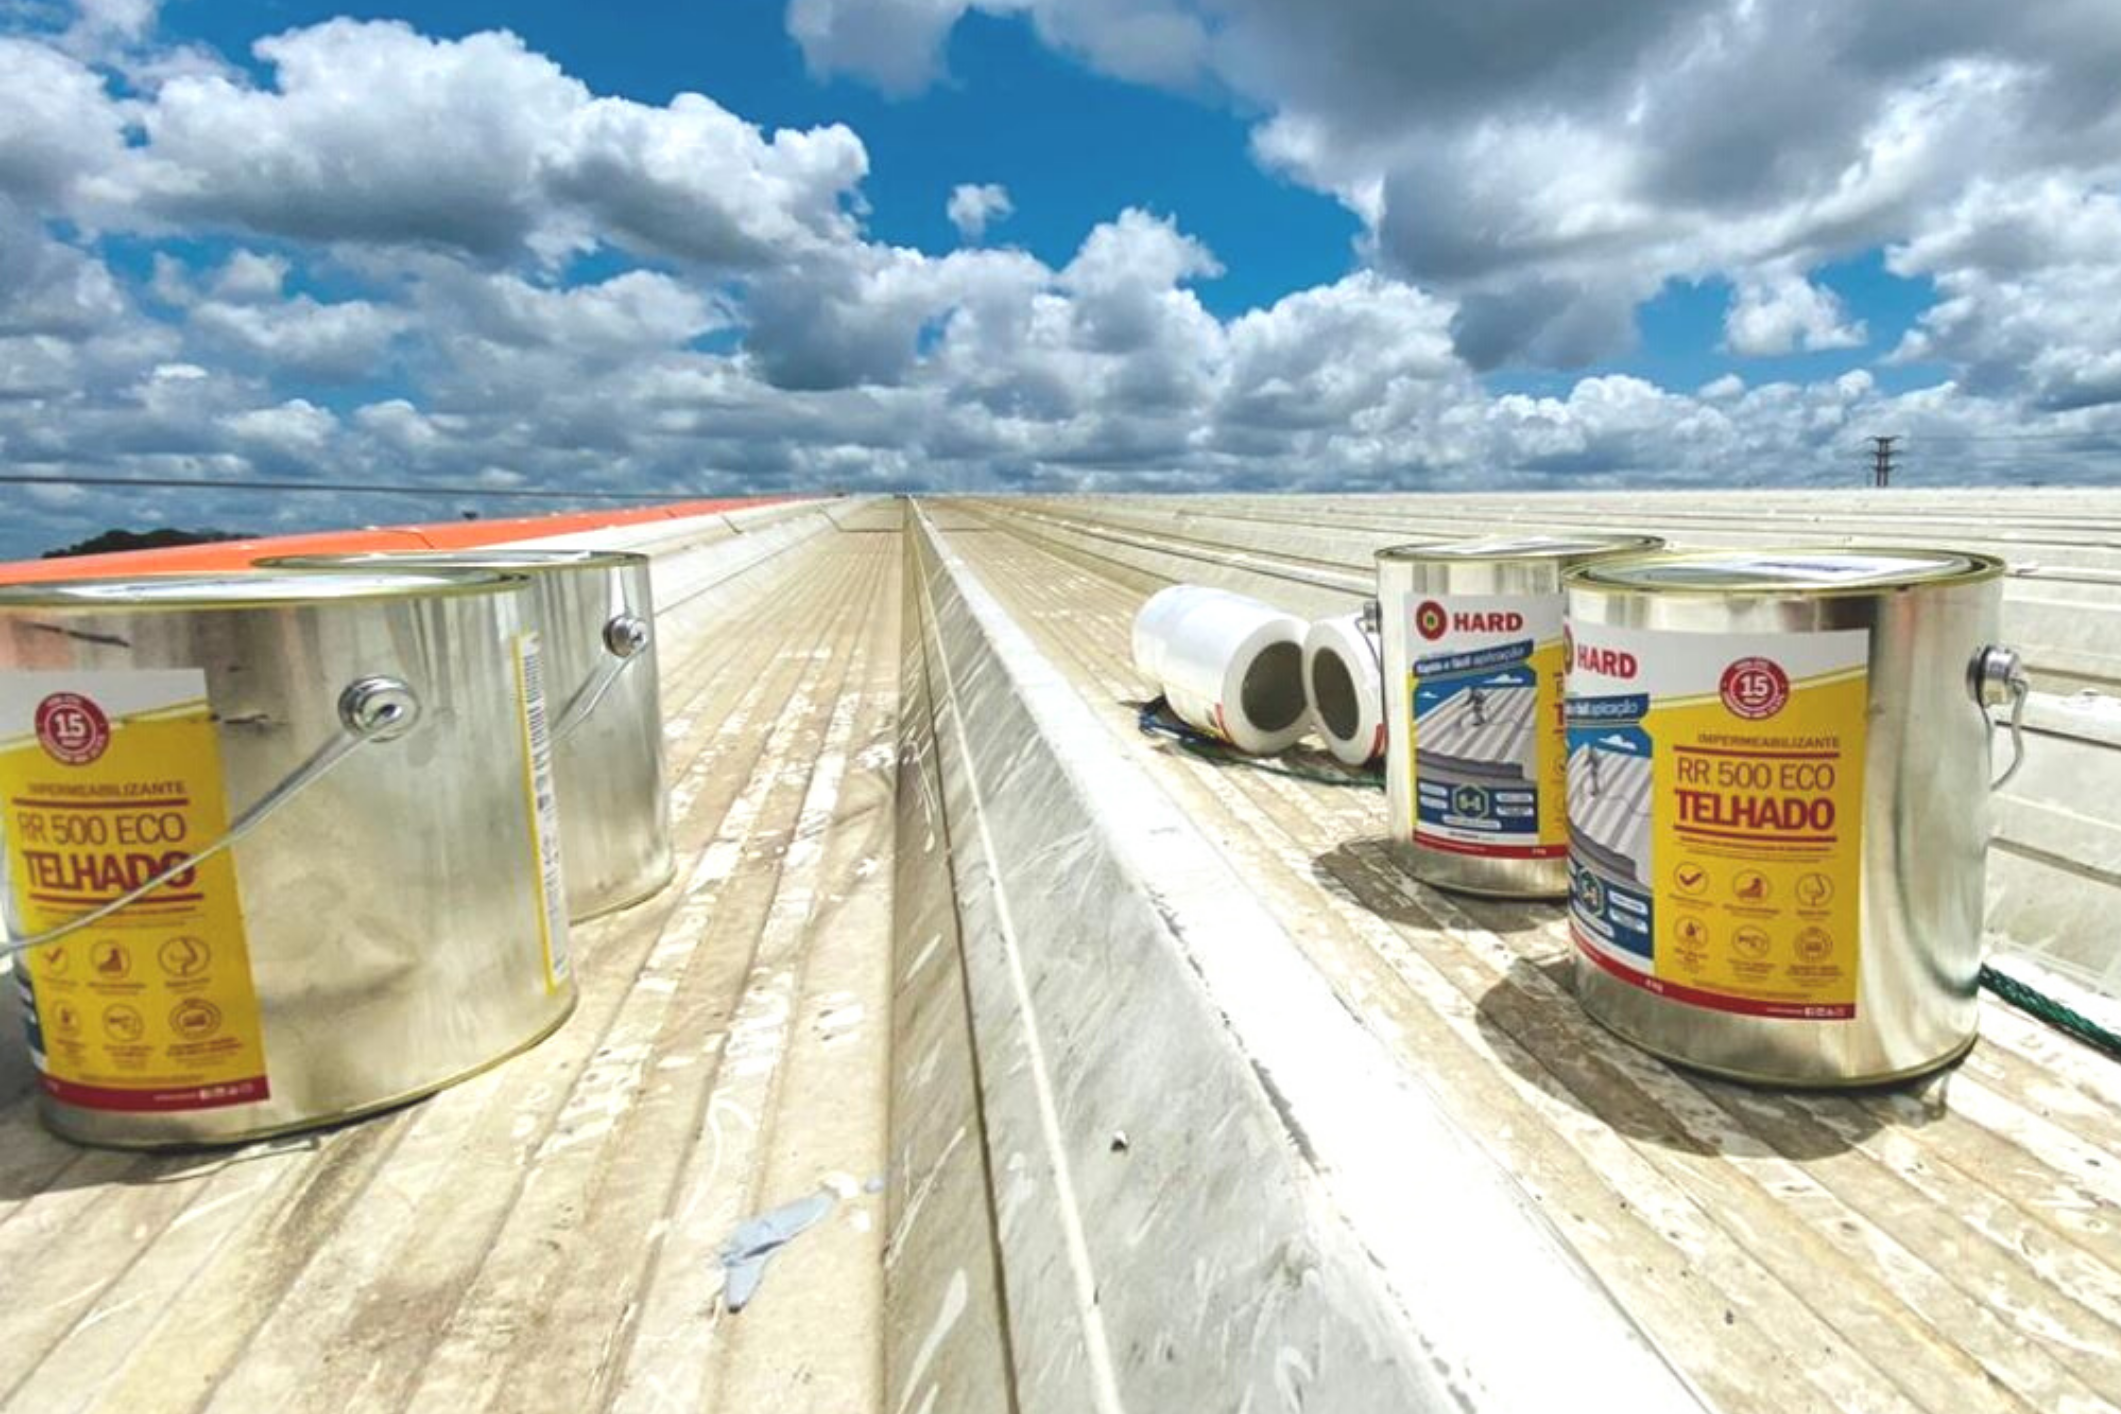 [CASE] Eliminação da corrosão e goteiras nas sobreposições das telhas com o RR 500 ECO em Salvador/BA